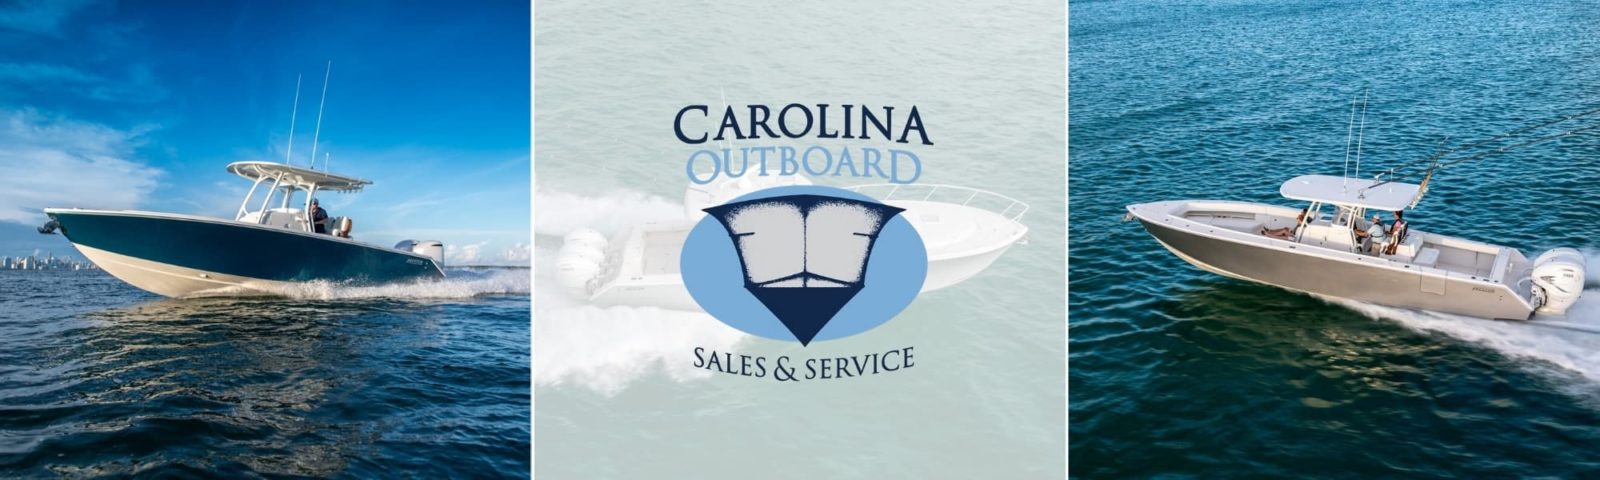 carolina outboard hero image